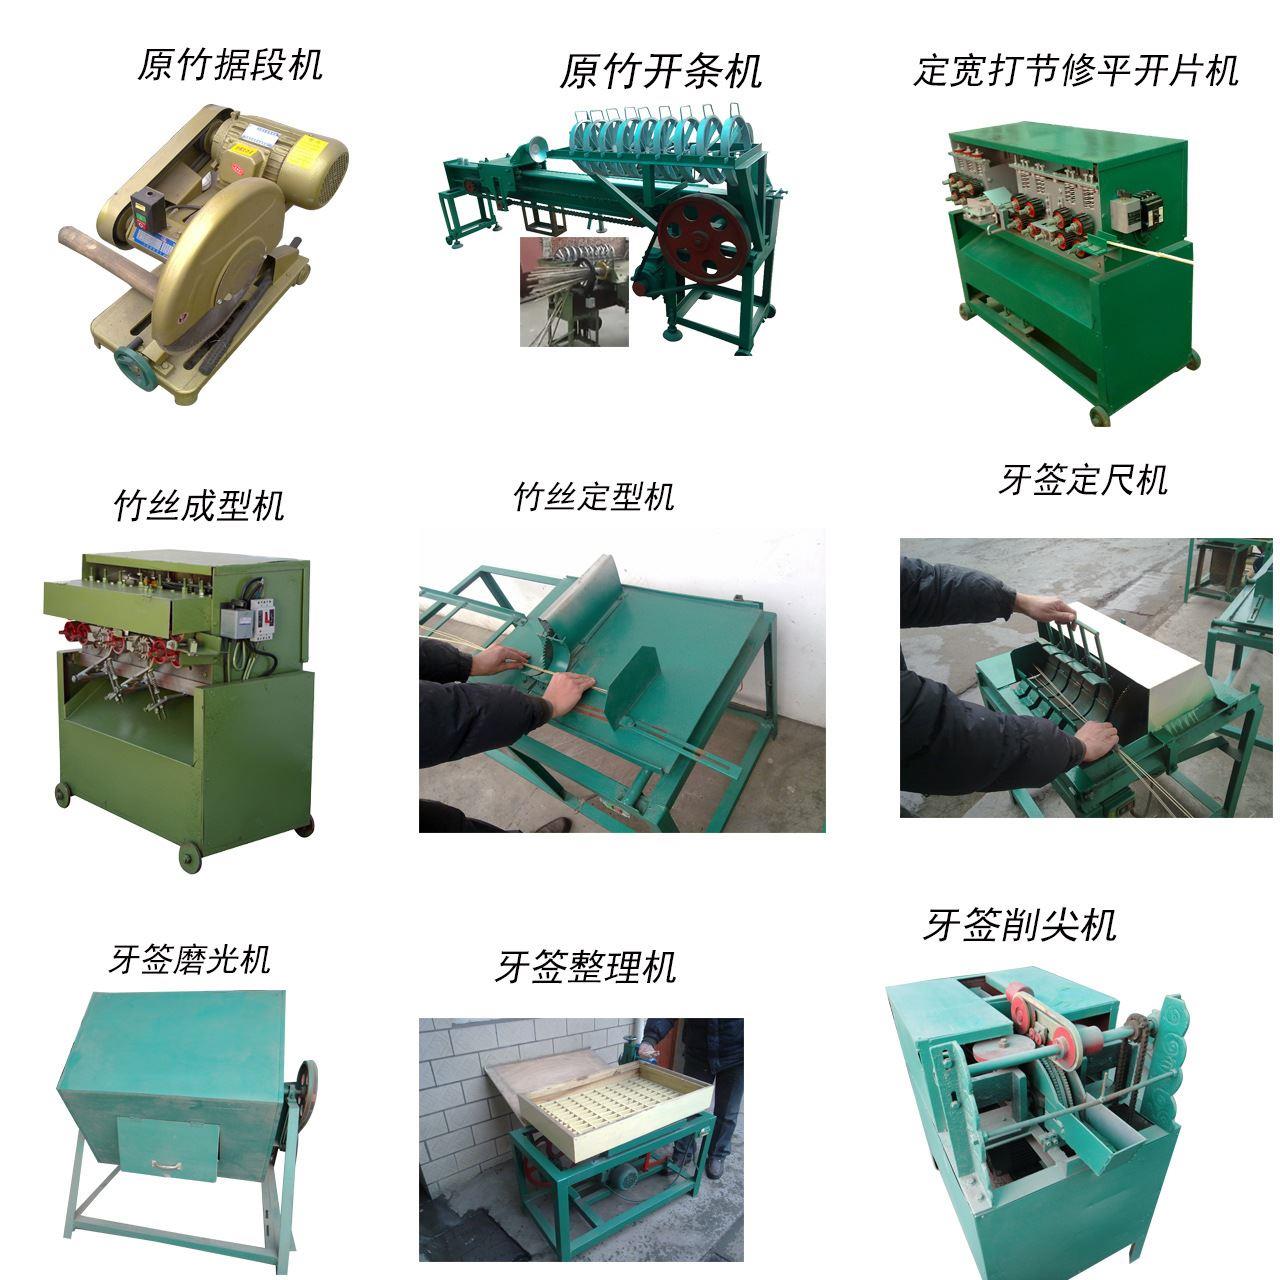 高档筷子生产机器设备